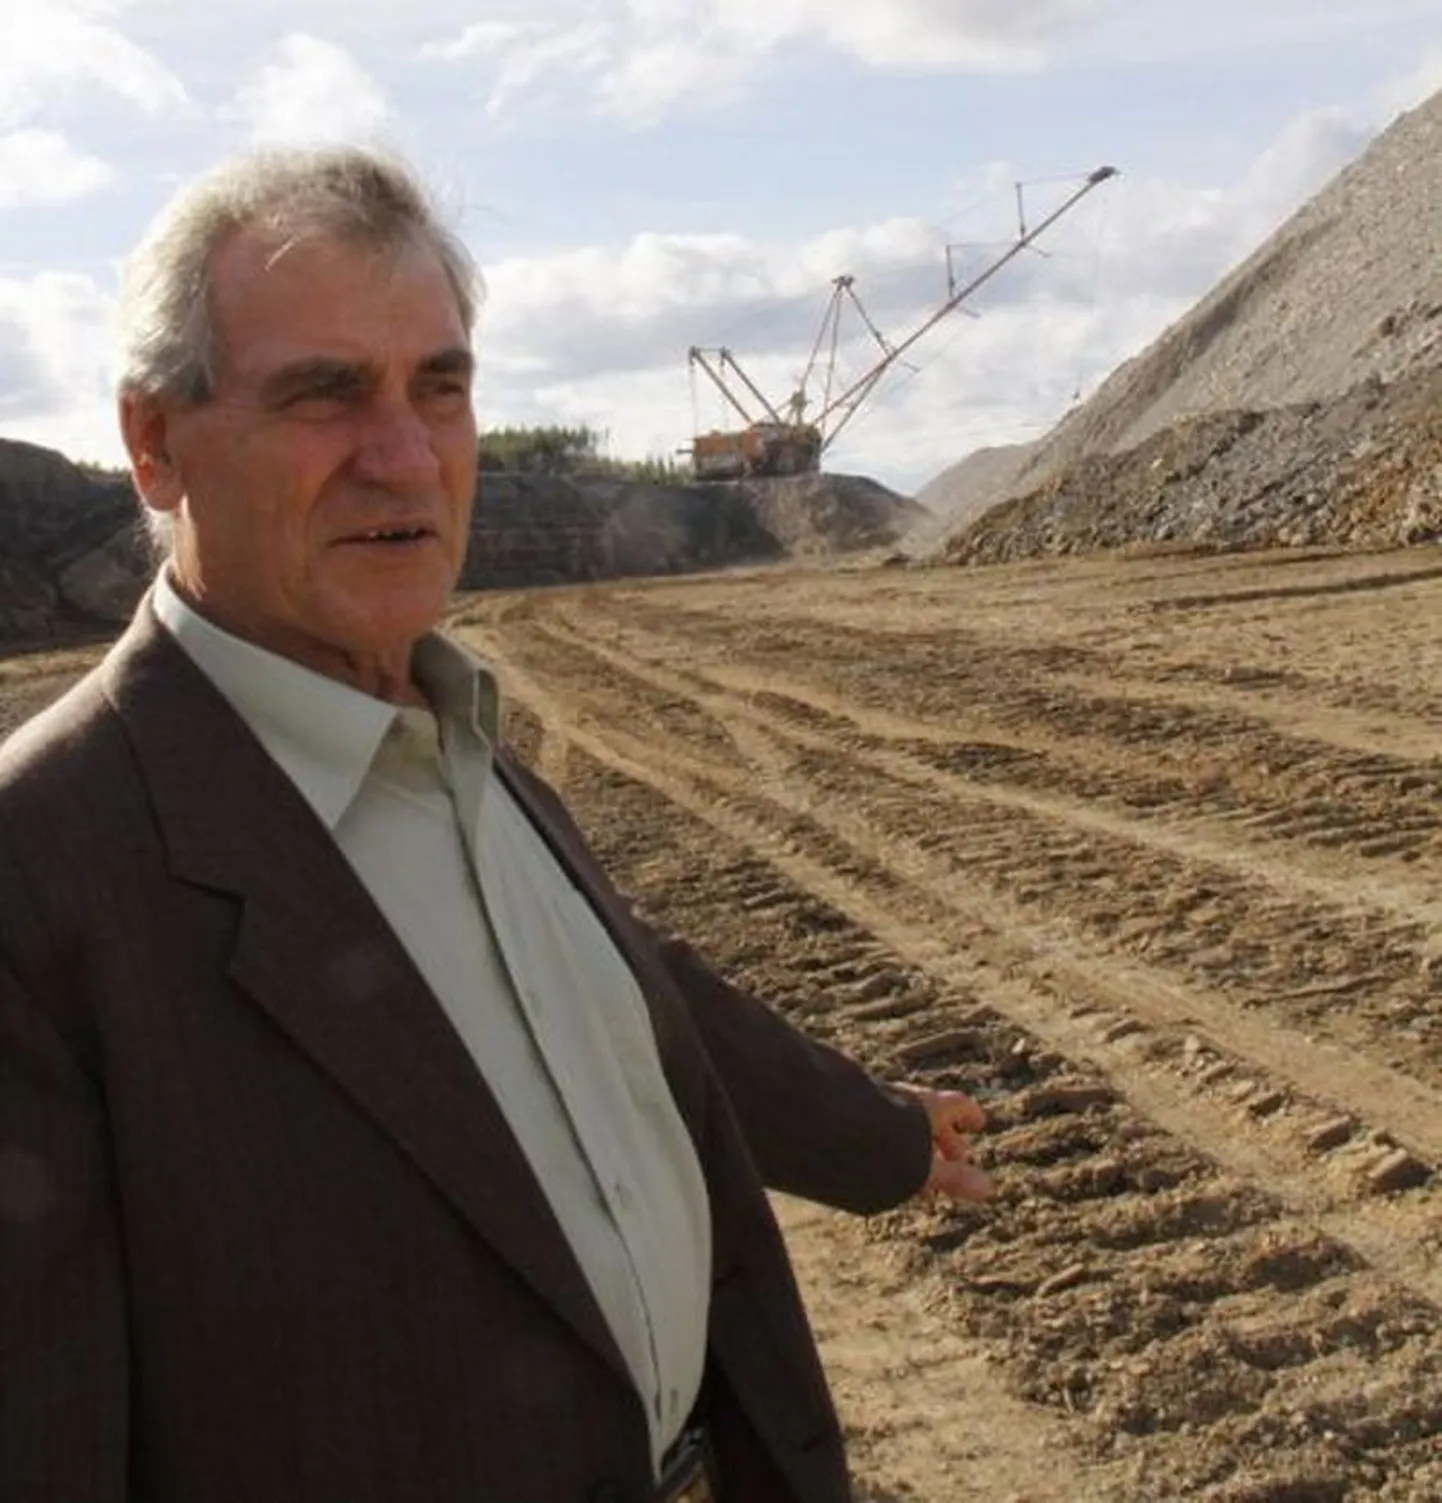 56 лет проработал в горнодобывающей промышленности Эстонии 74-летний Александр Фишов. Работает и до сих пор. А пенсия у него – 331 евро. Меньше, чем пособие по безработице в Греции.